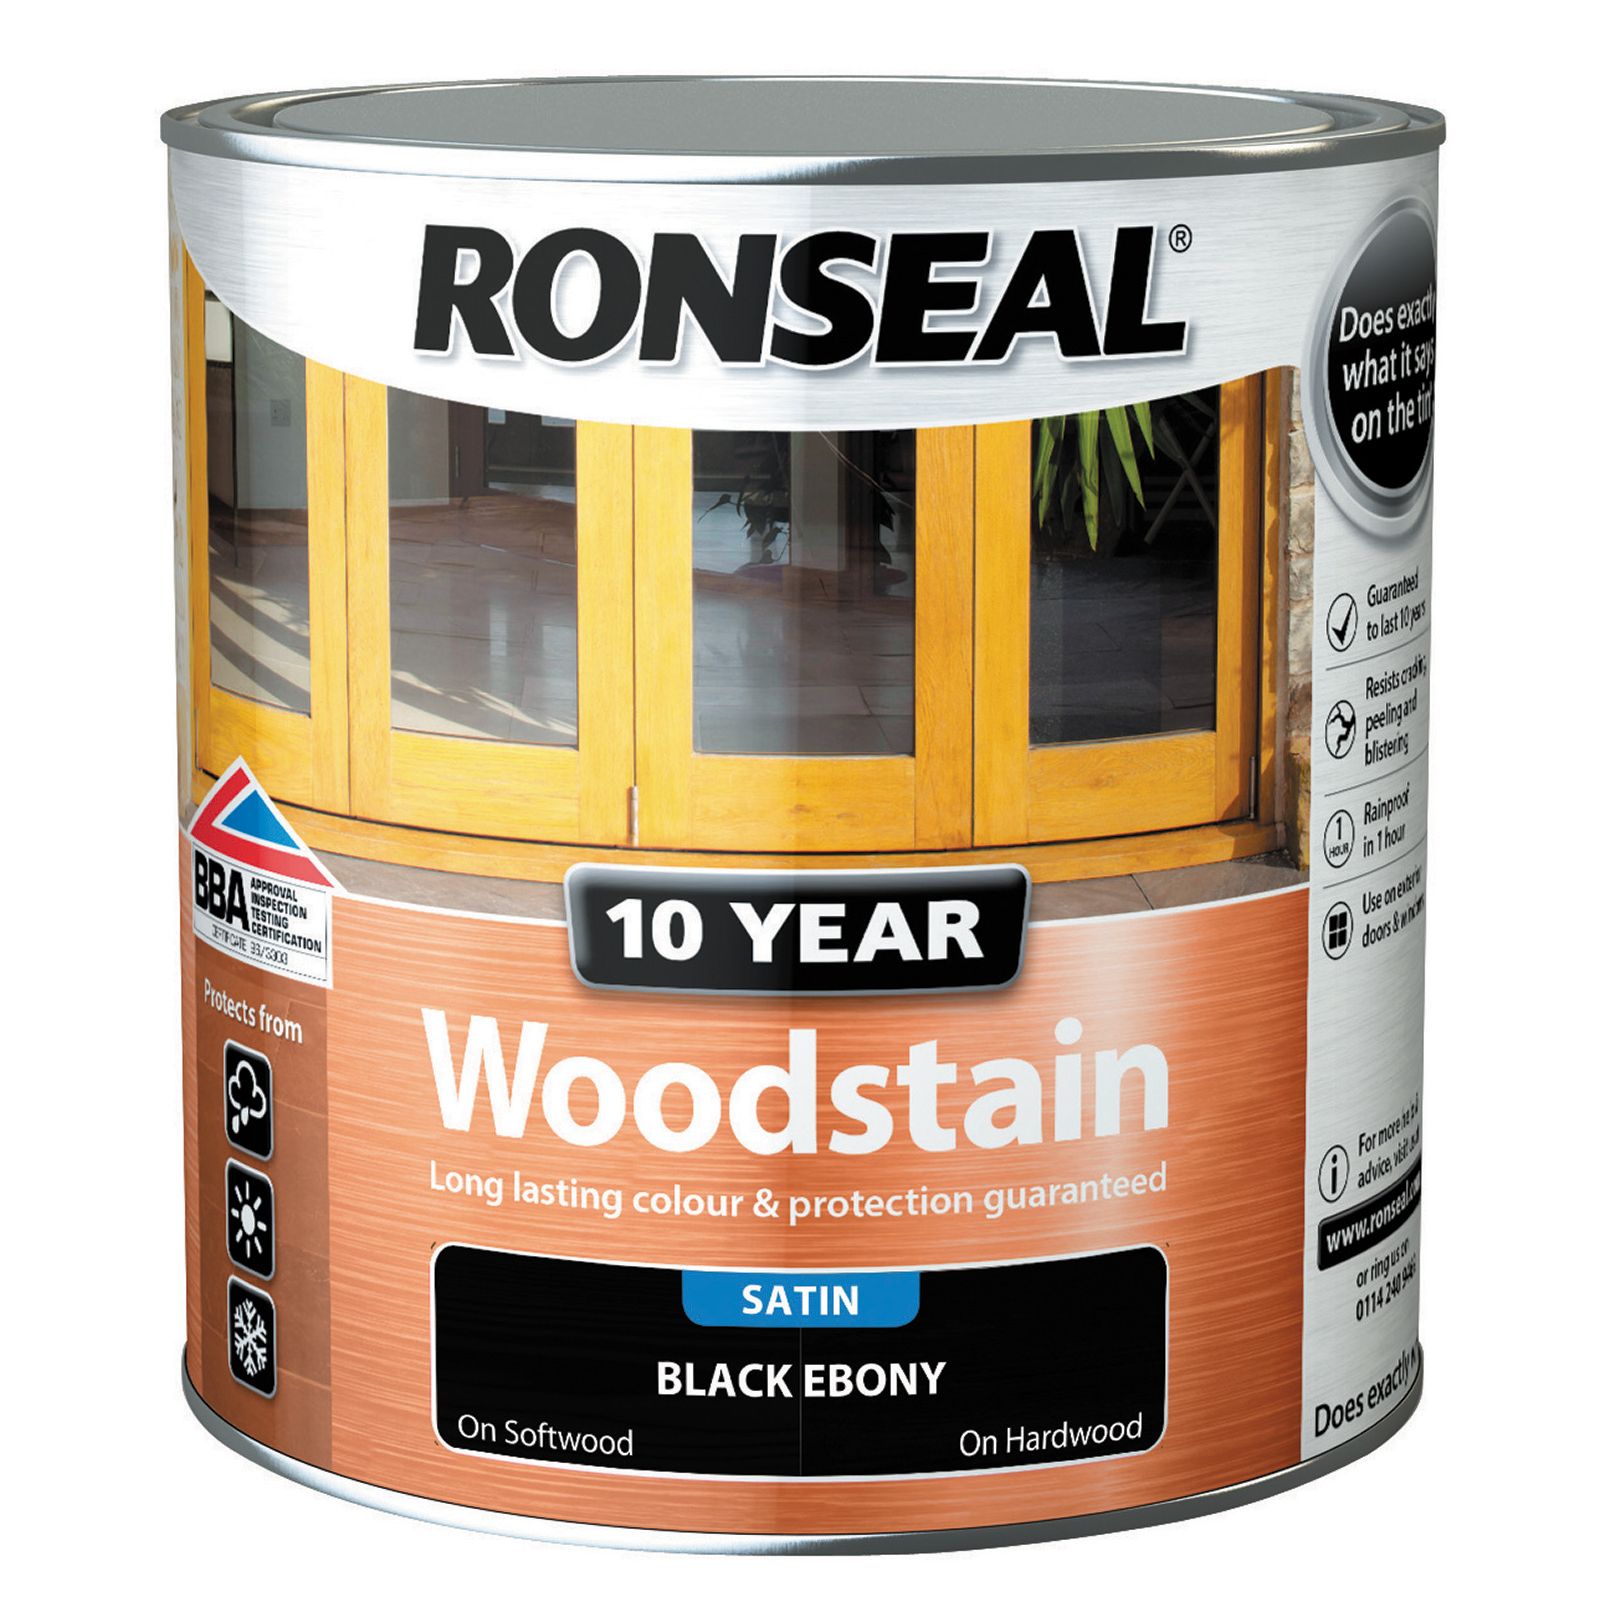 Ronseal 10 Year Woodstain - Black Ebony - 2.5L